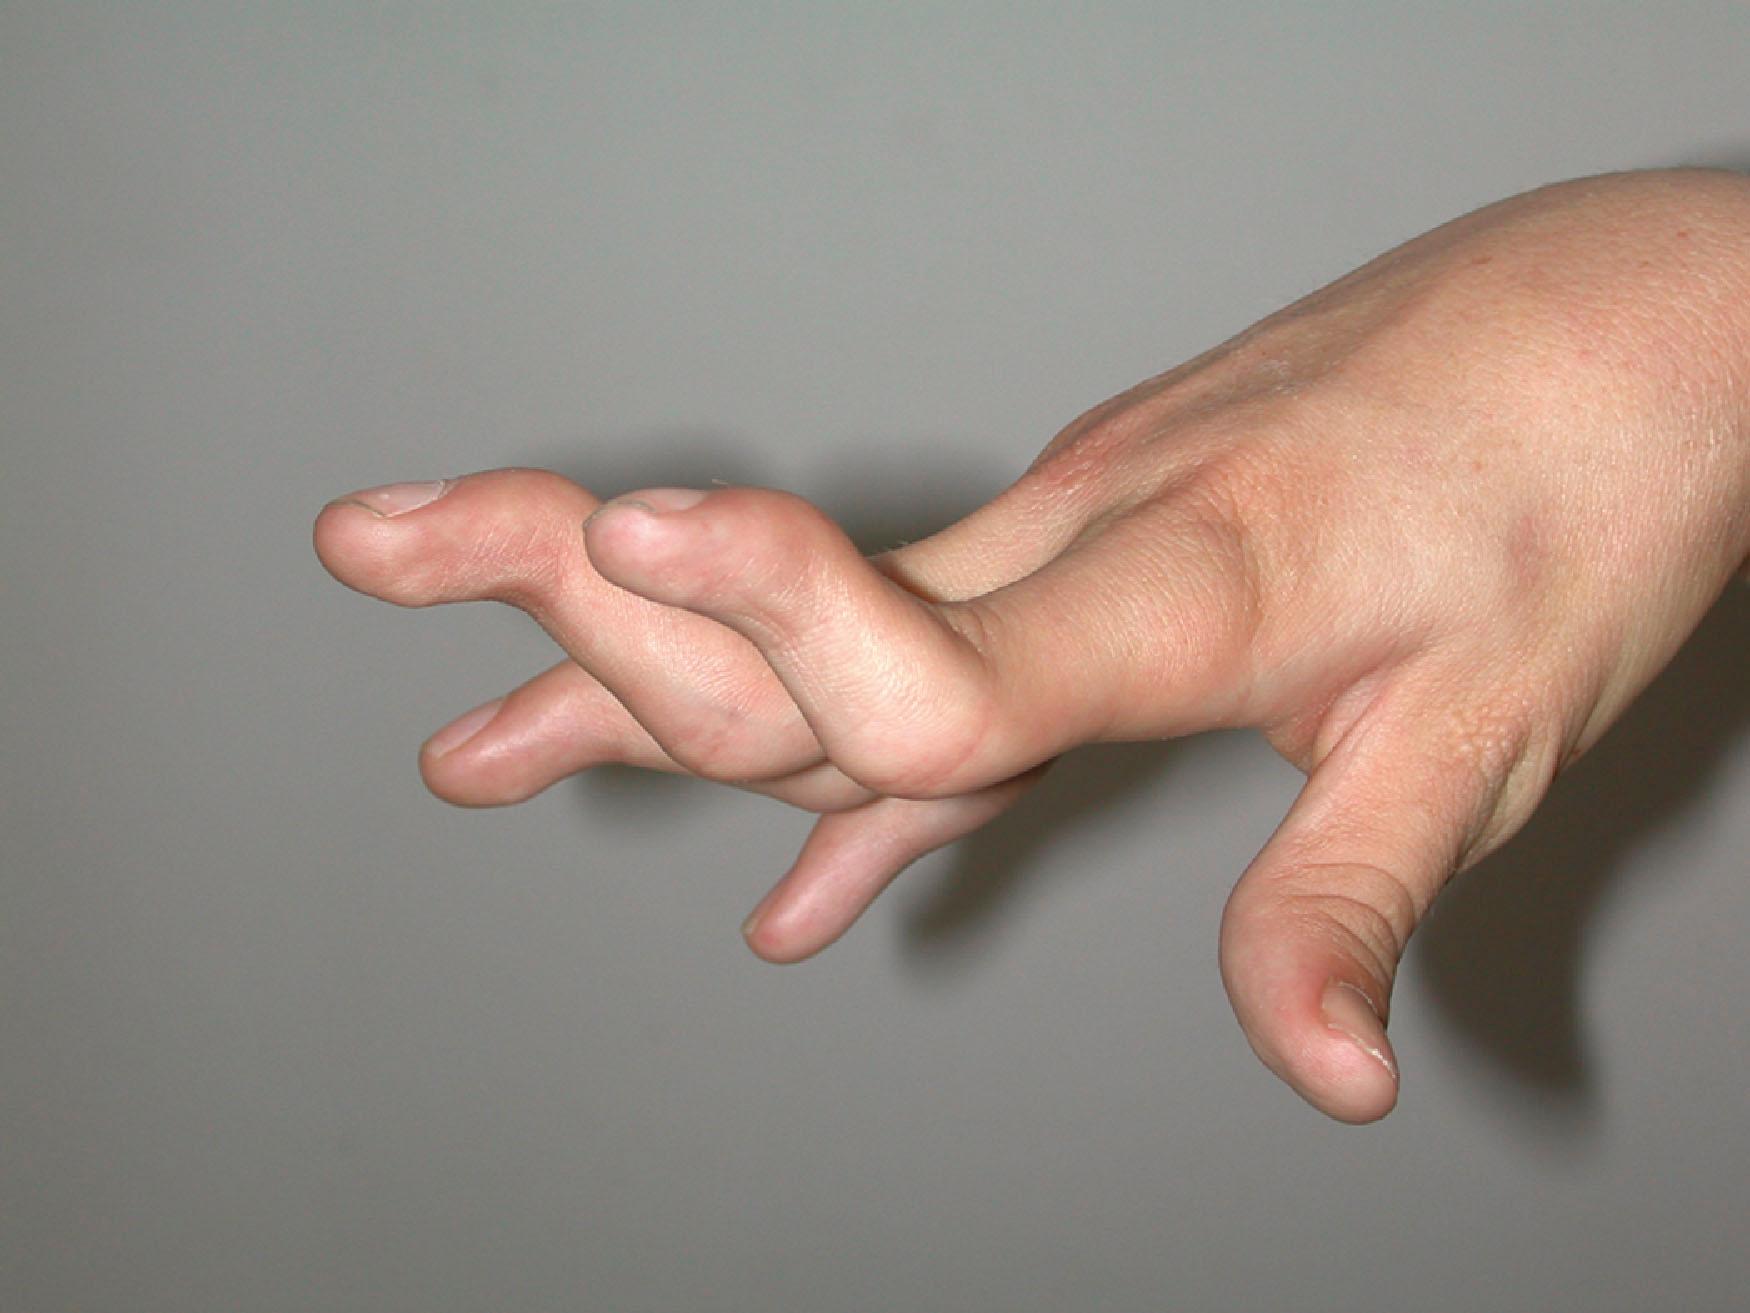 Figure 29.6, Spastic swan-neck deformity of the fingers.